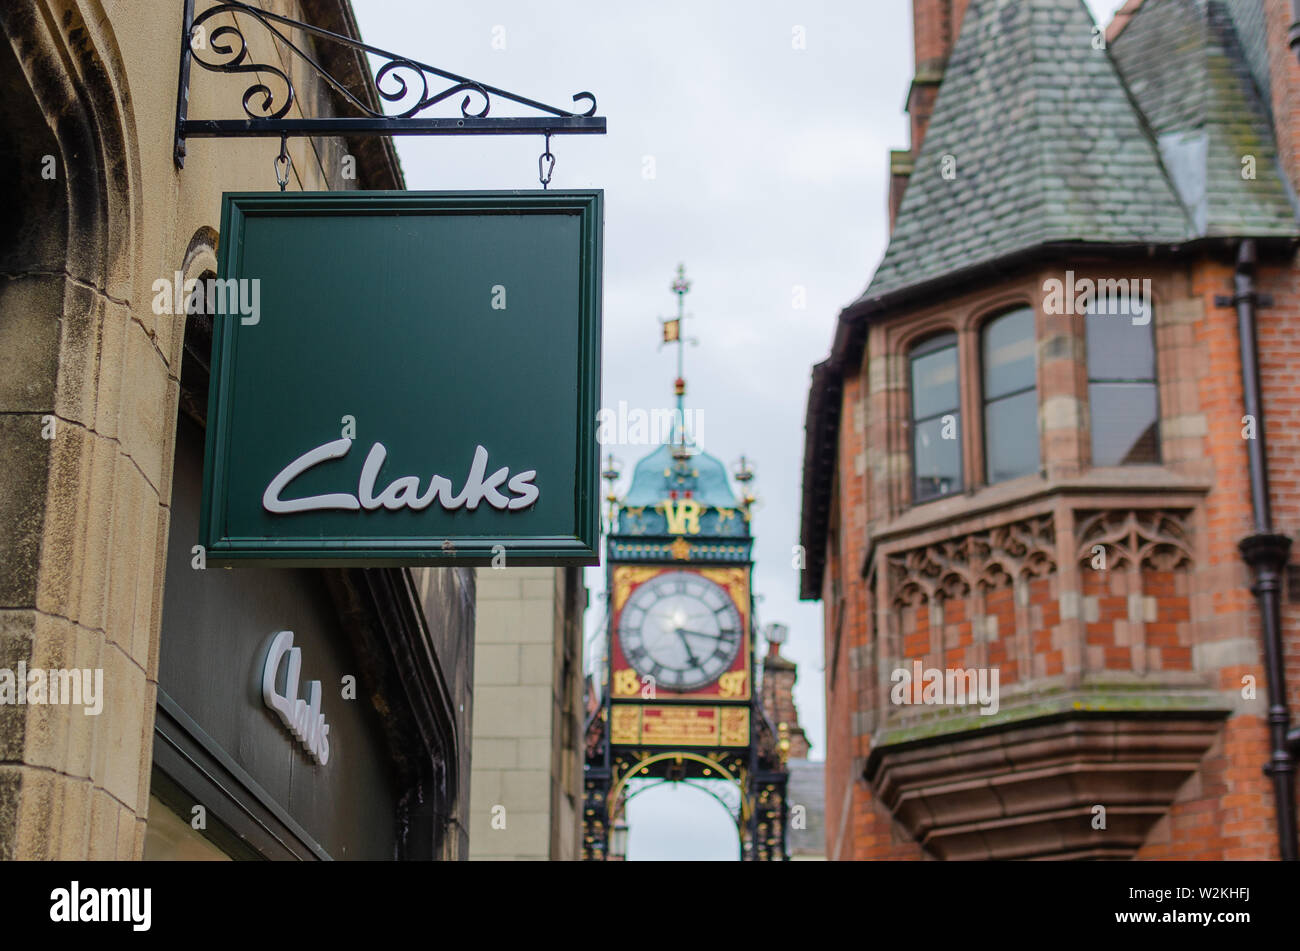 Clarks shop signe et la célèbre horloge Eastgate Chester à l'arrière-plan. La High Street, Chester, Royaume-Uni. Banque D'Images